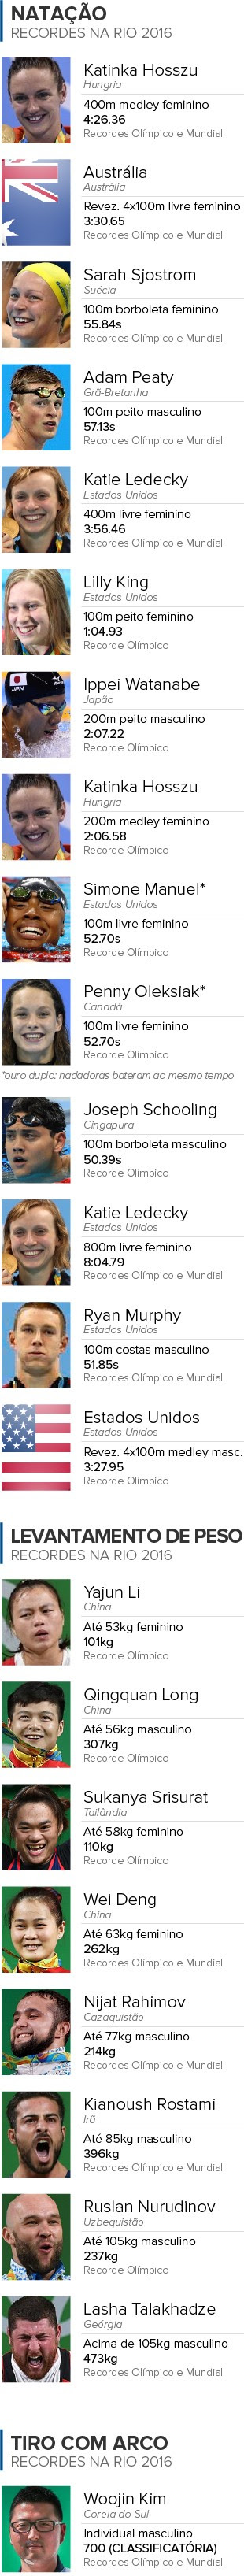 Info-RECORDES-Batidos-na-Olimpiada-03 (Foto: infoesporte)